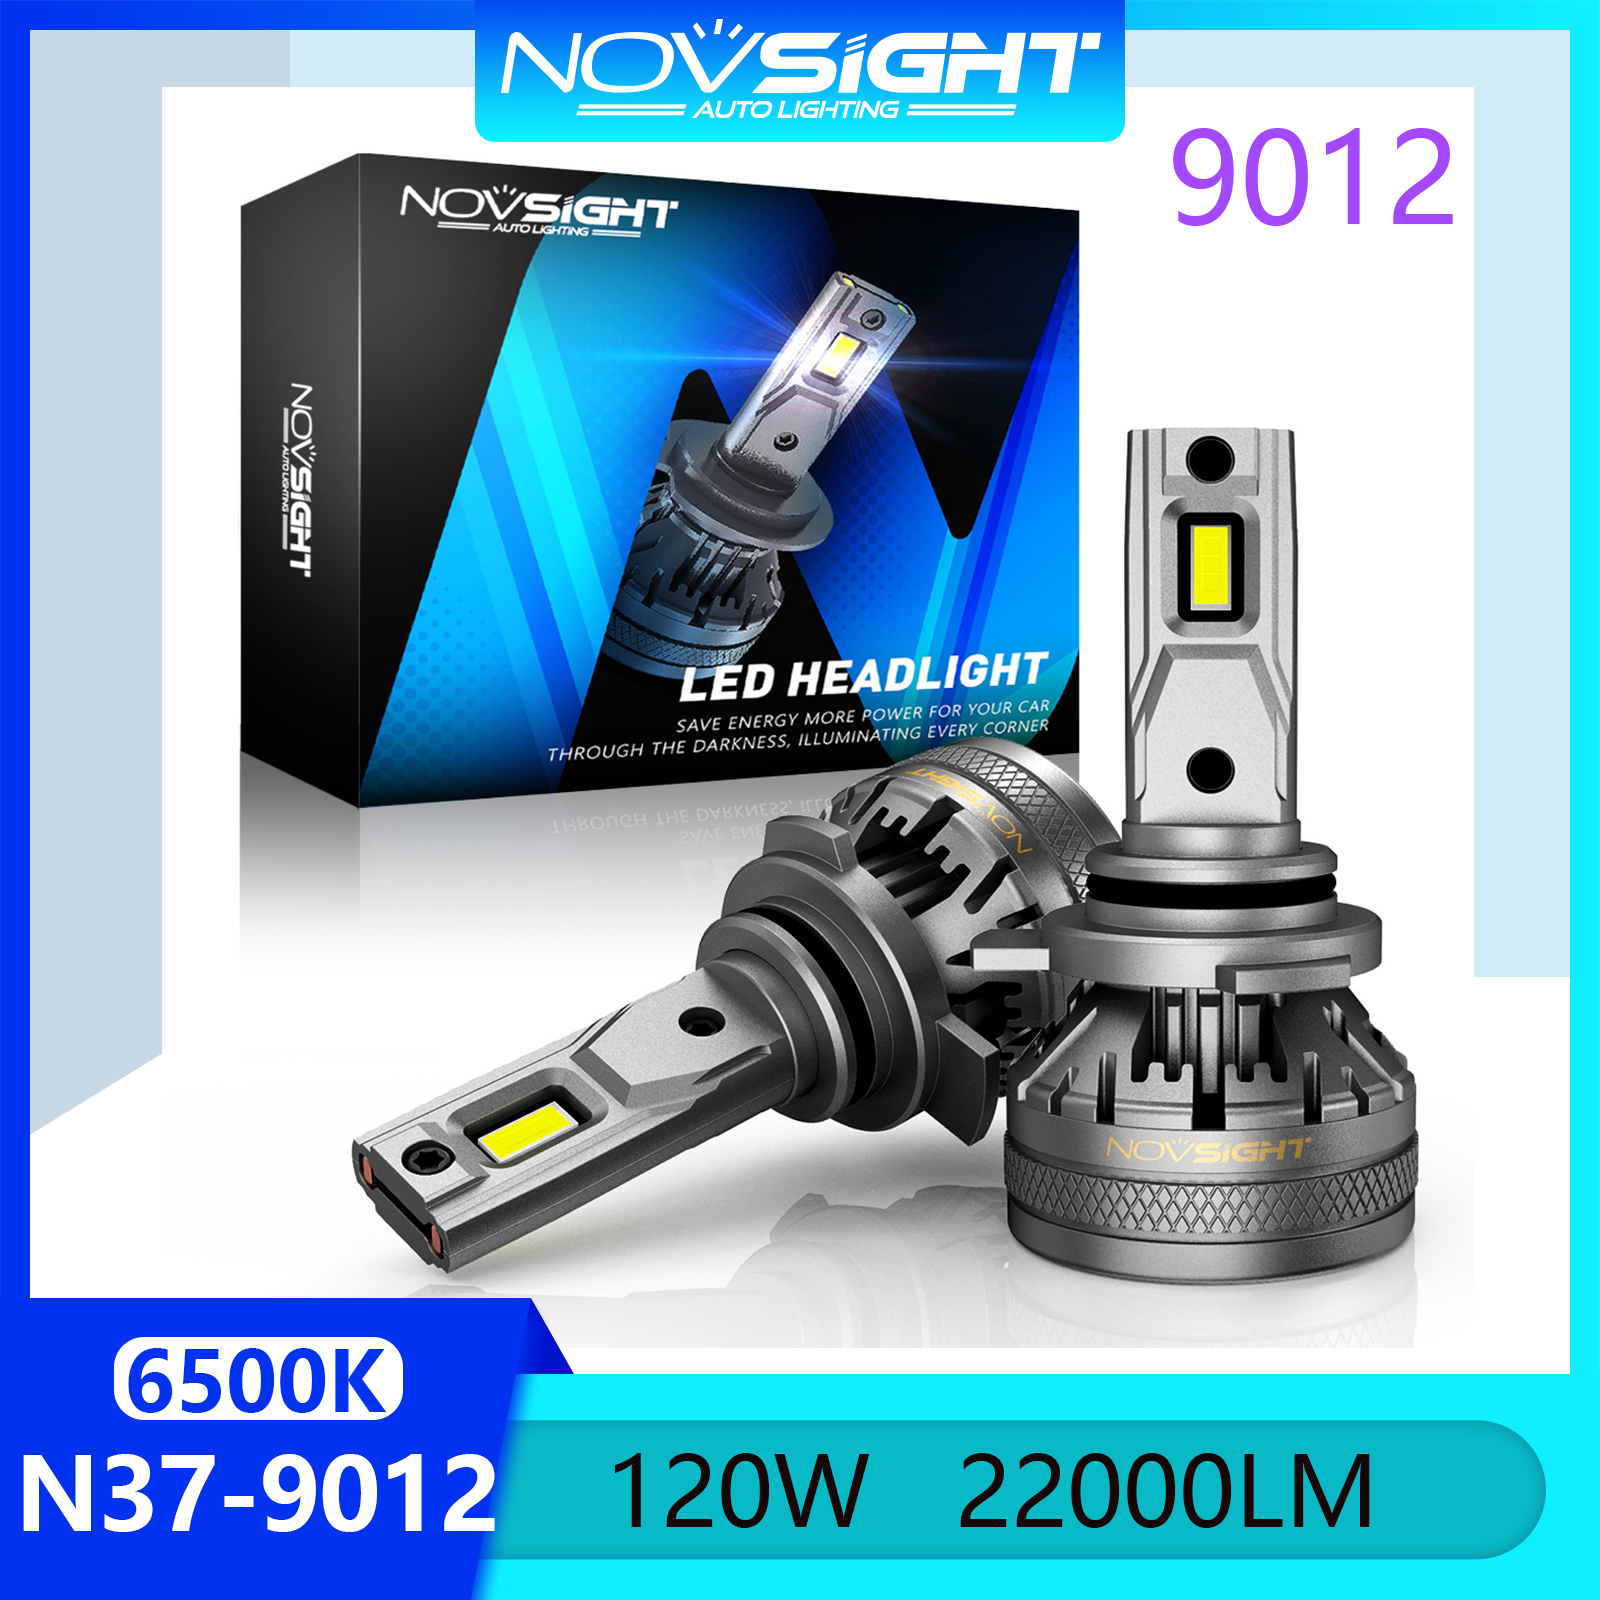 Novsight N37 6500K Đèn pha LED siêu sáng HIR2 9012 Bộ đèn pha Led Đèn pha sương mù Chùm sáng cao / Chùm sáng thấp 120W 22000LM Cắm và chạy Còn hàng 1 cặp 2 cái Bảo hành 2 năm Miễn phí vận chuyển